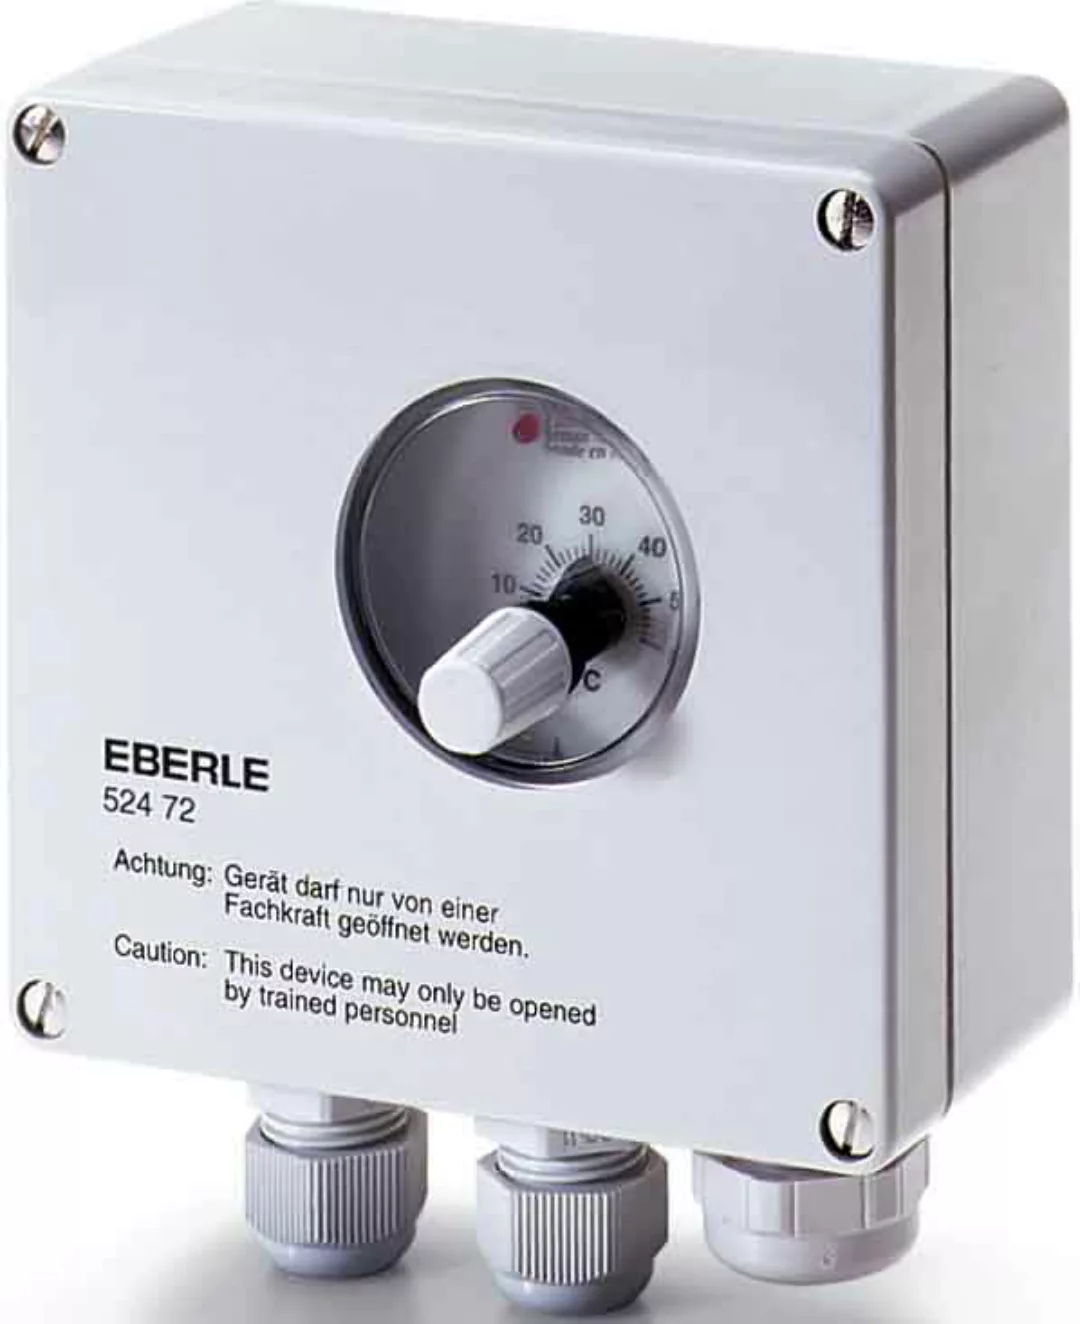 Eberle Controls Temperaturregler UTR 20 - 52472143094 günstig online kaufen